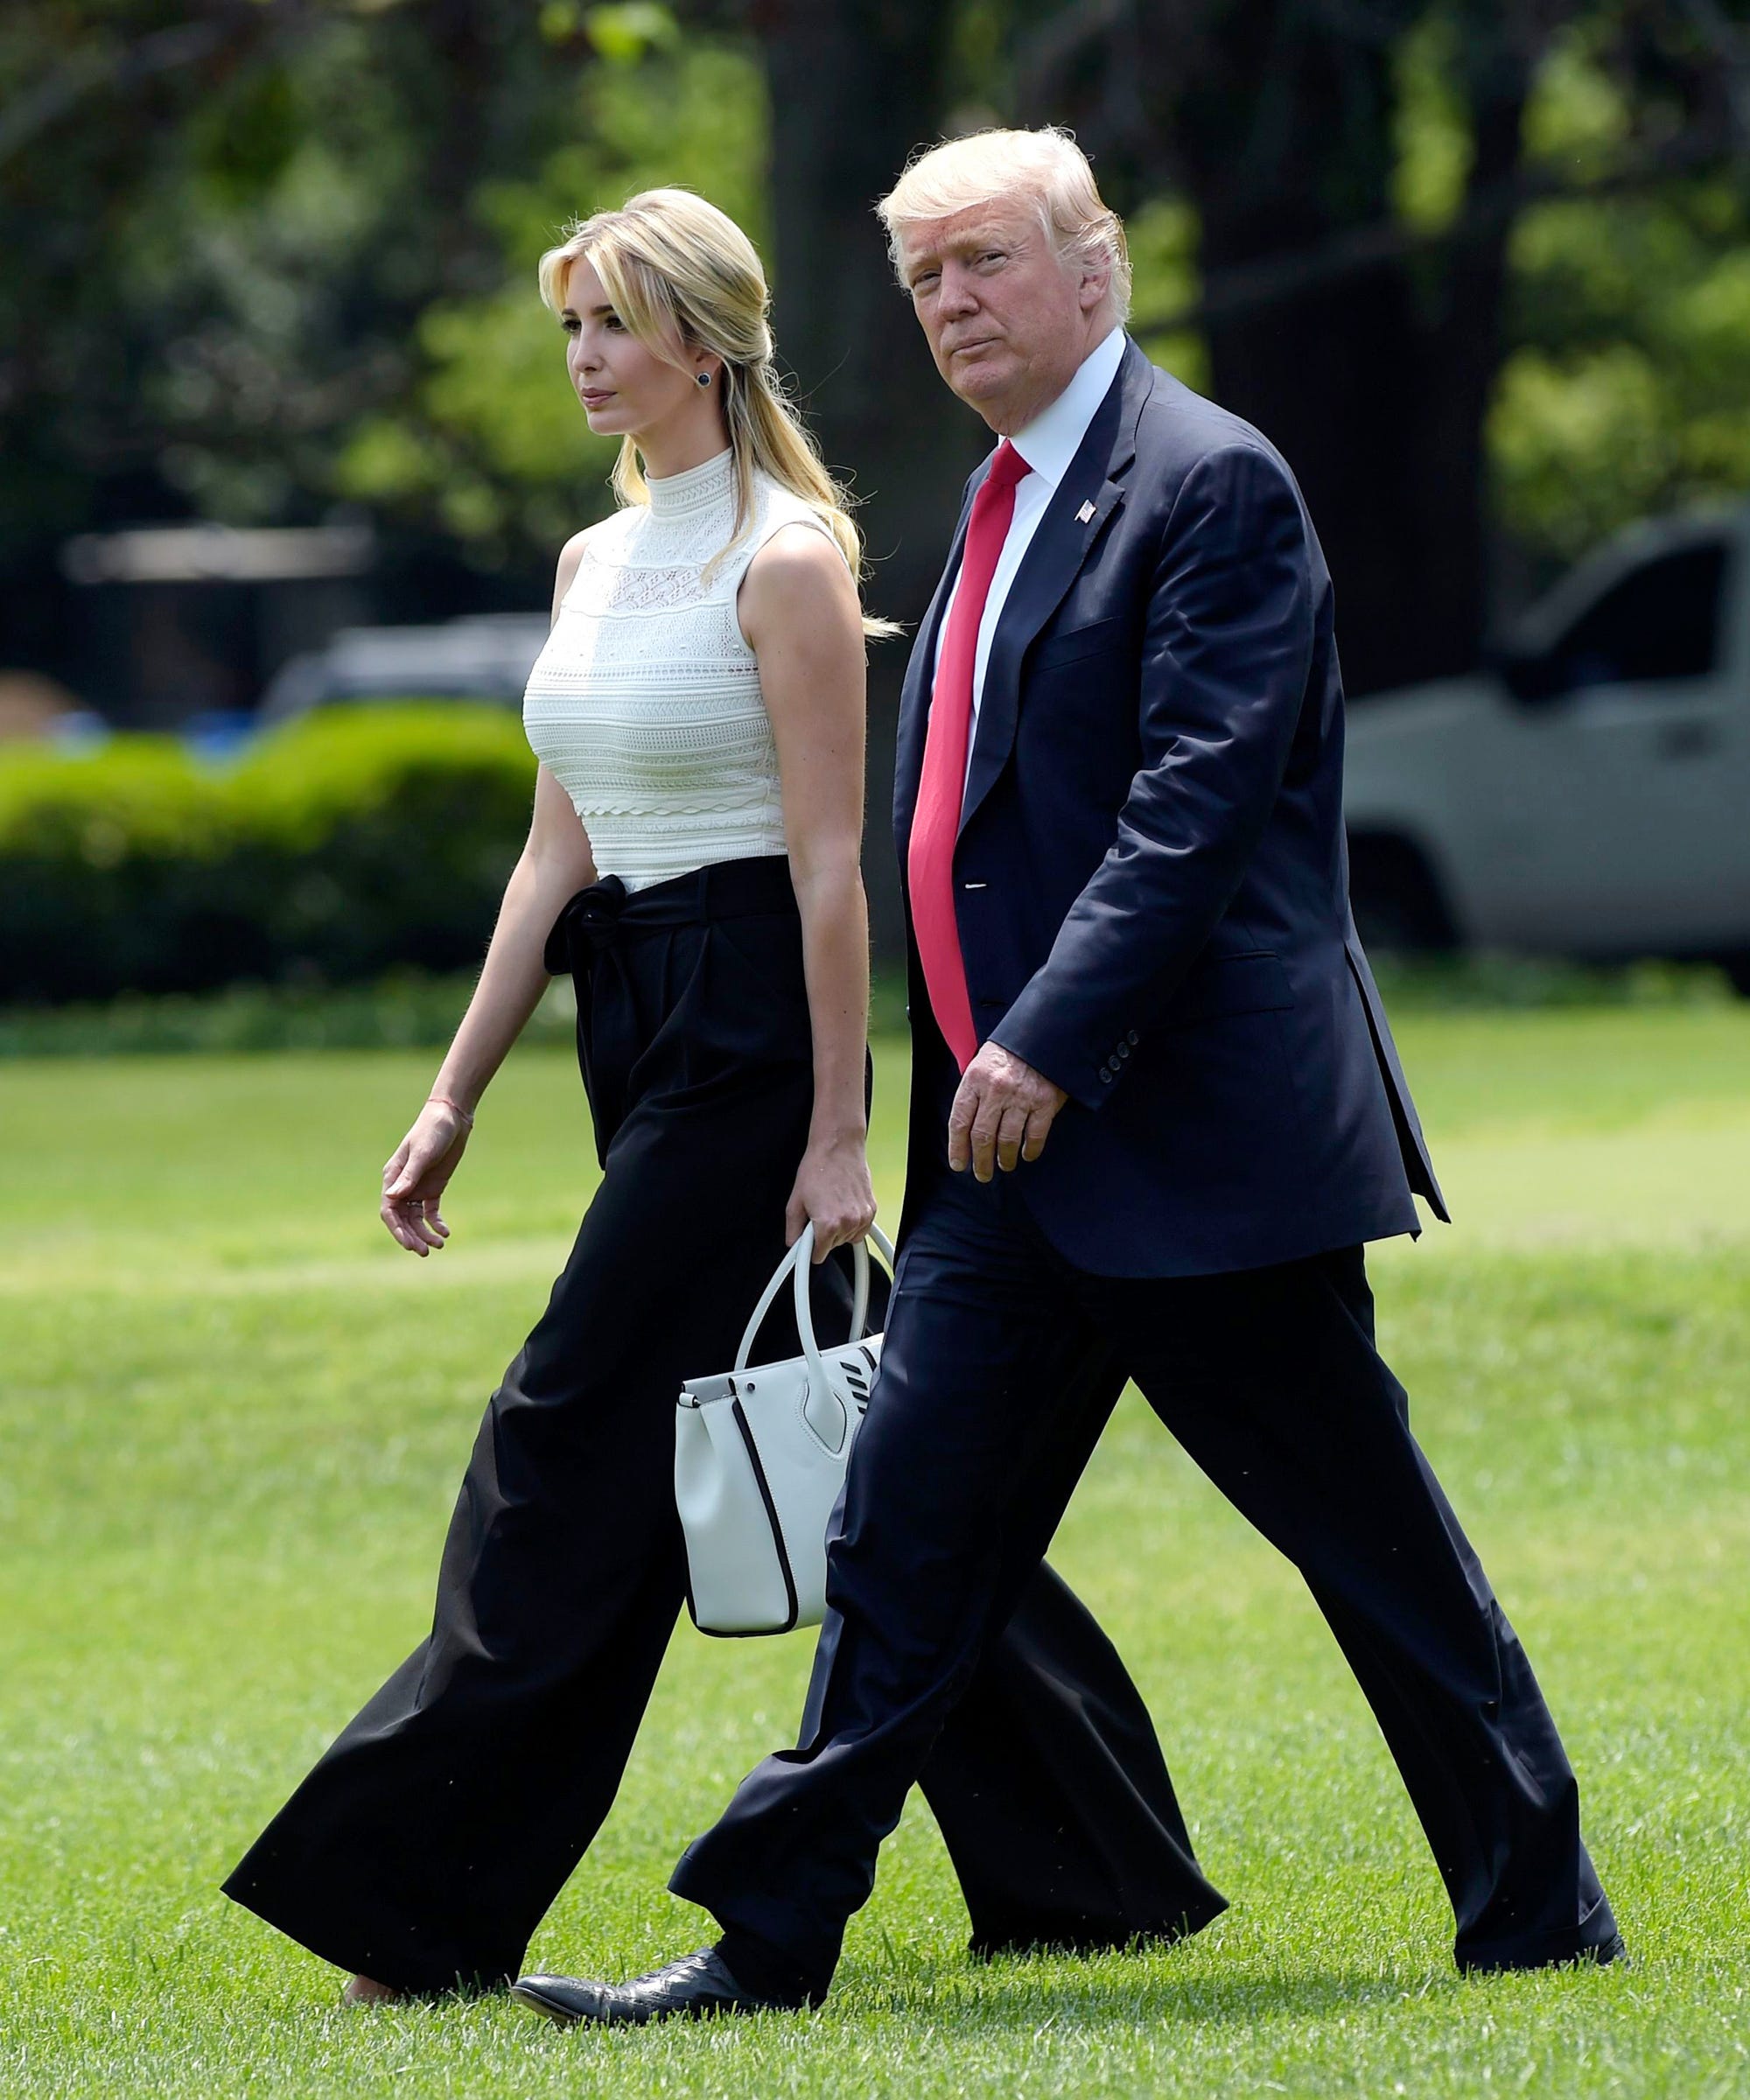 Ái nữ tổng thống Trump nhiều lần mắc lỗi rõ mồn một với áo sơ mi vì vòng 1 đầy đặn - 2